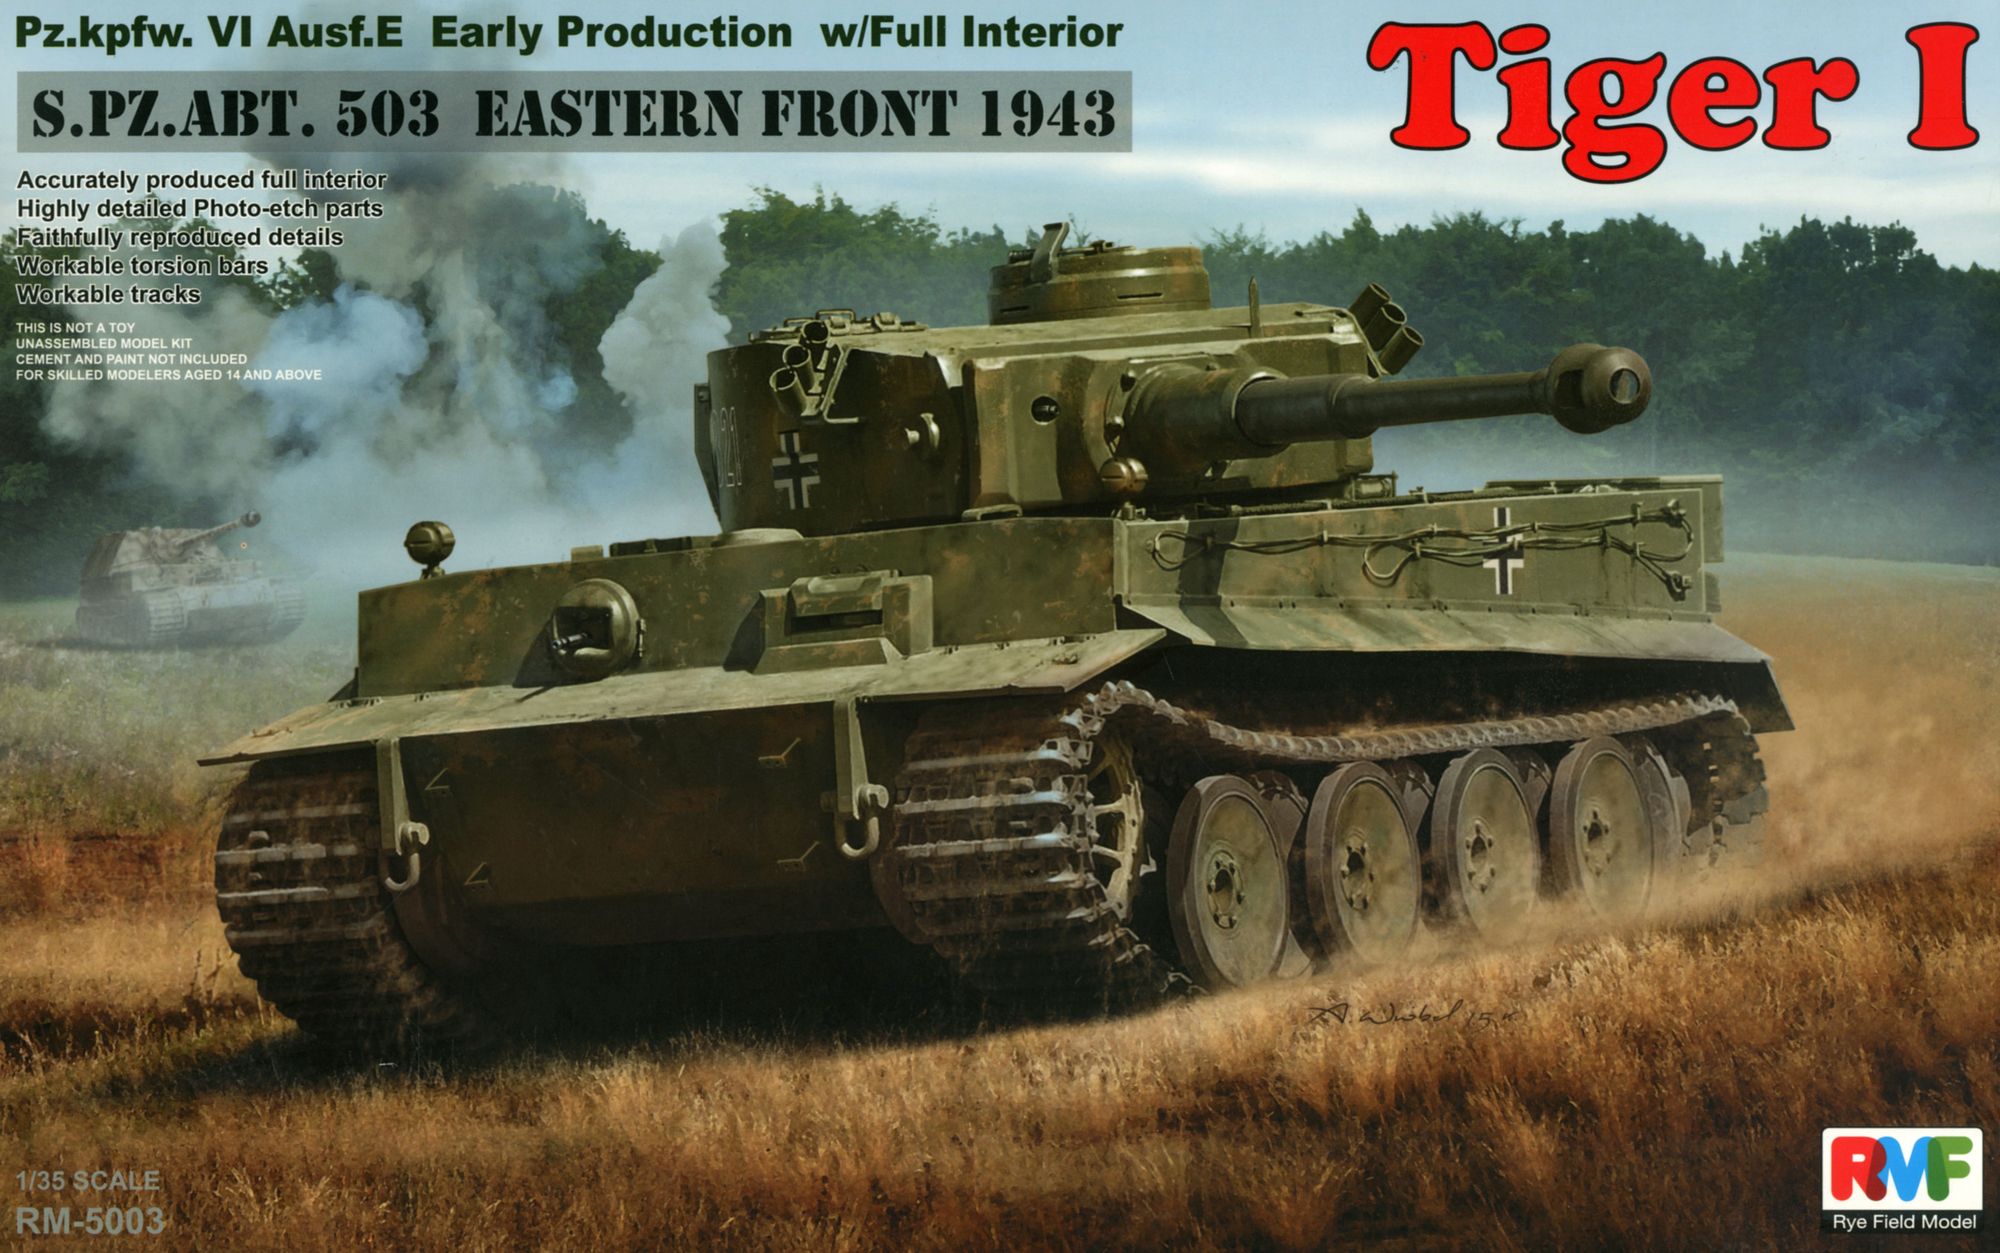 RFM5003 RMF 1/35 タイガーI 重戦車 前期型 フルインテリア 503重戦車大隊 東部戦線 1943年